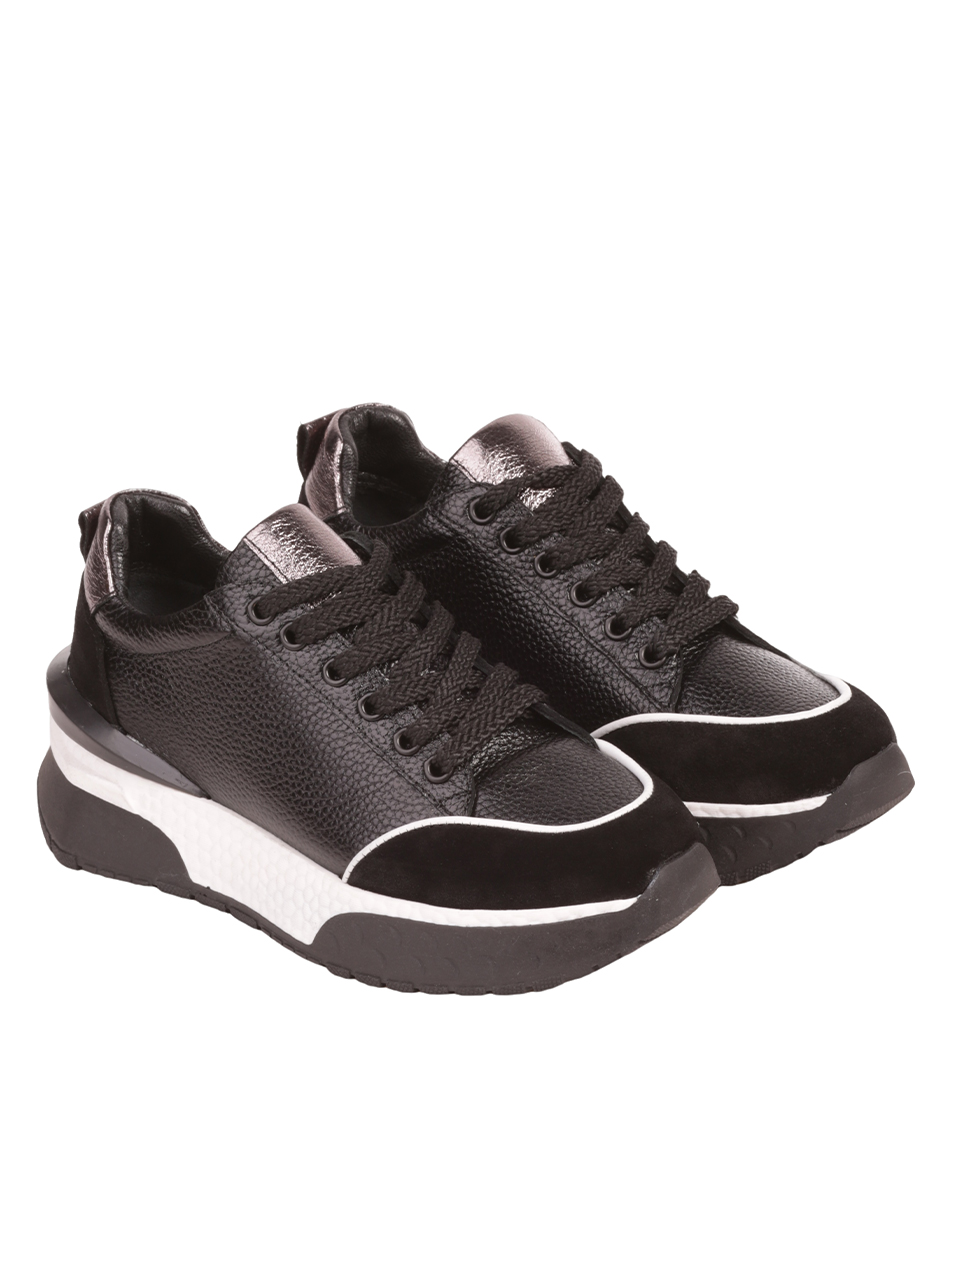 Дамски обувки от естествена кожа и велур в черно 3AT-23727 black